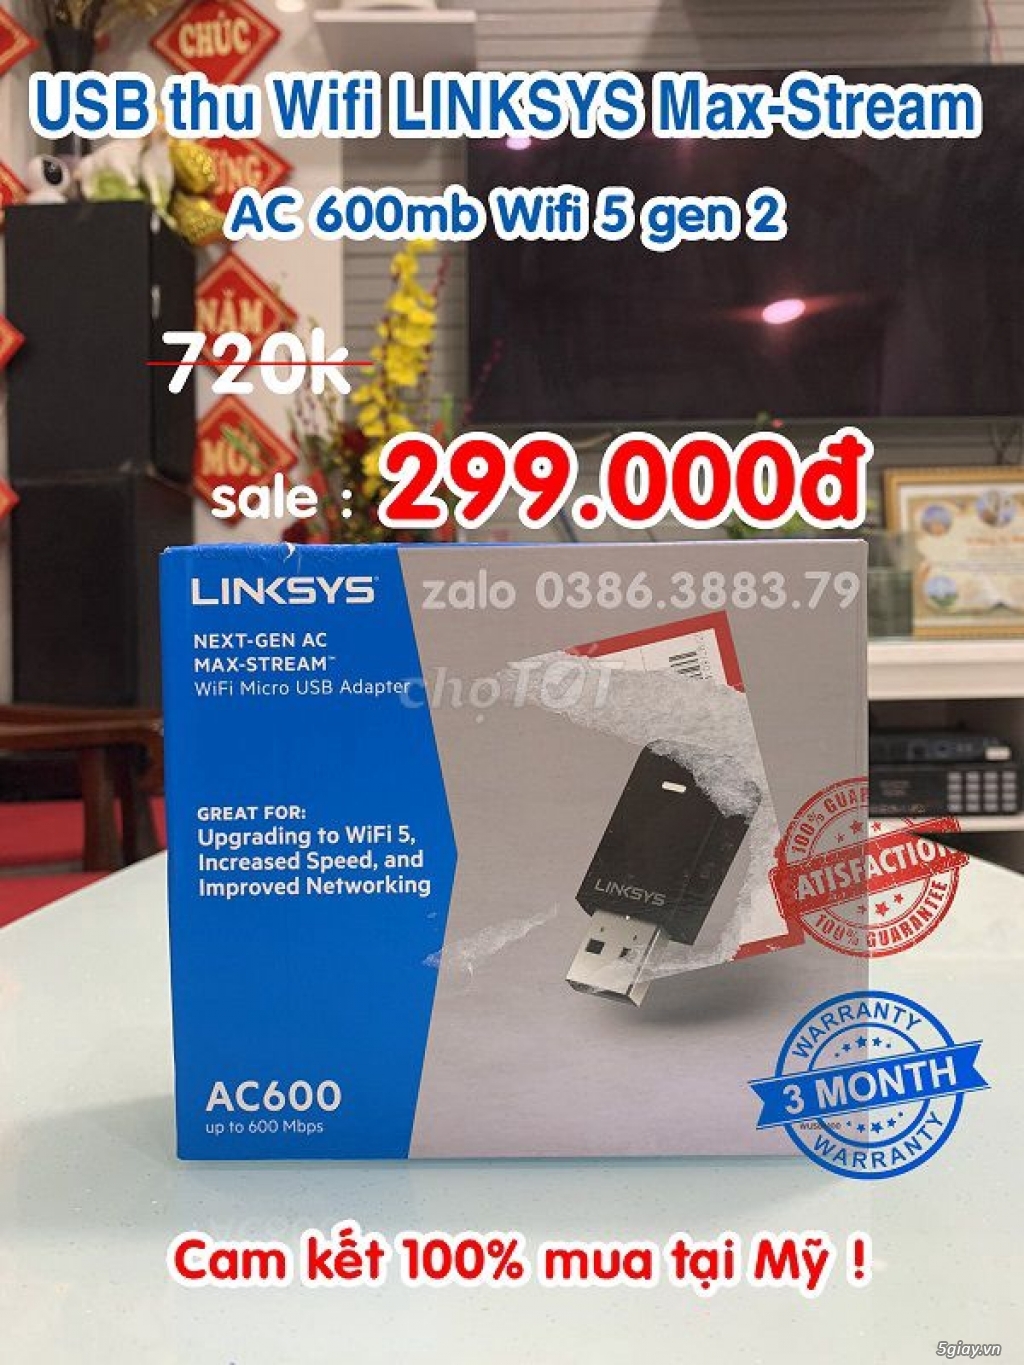 Cần bán Macbook Air mid 2013 Model A1466 13.3 inch i5 4GB 128GB 5tr500 - 5